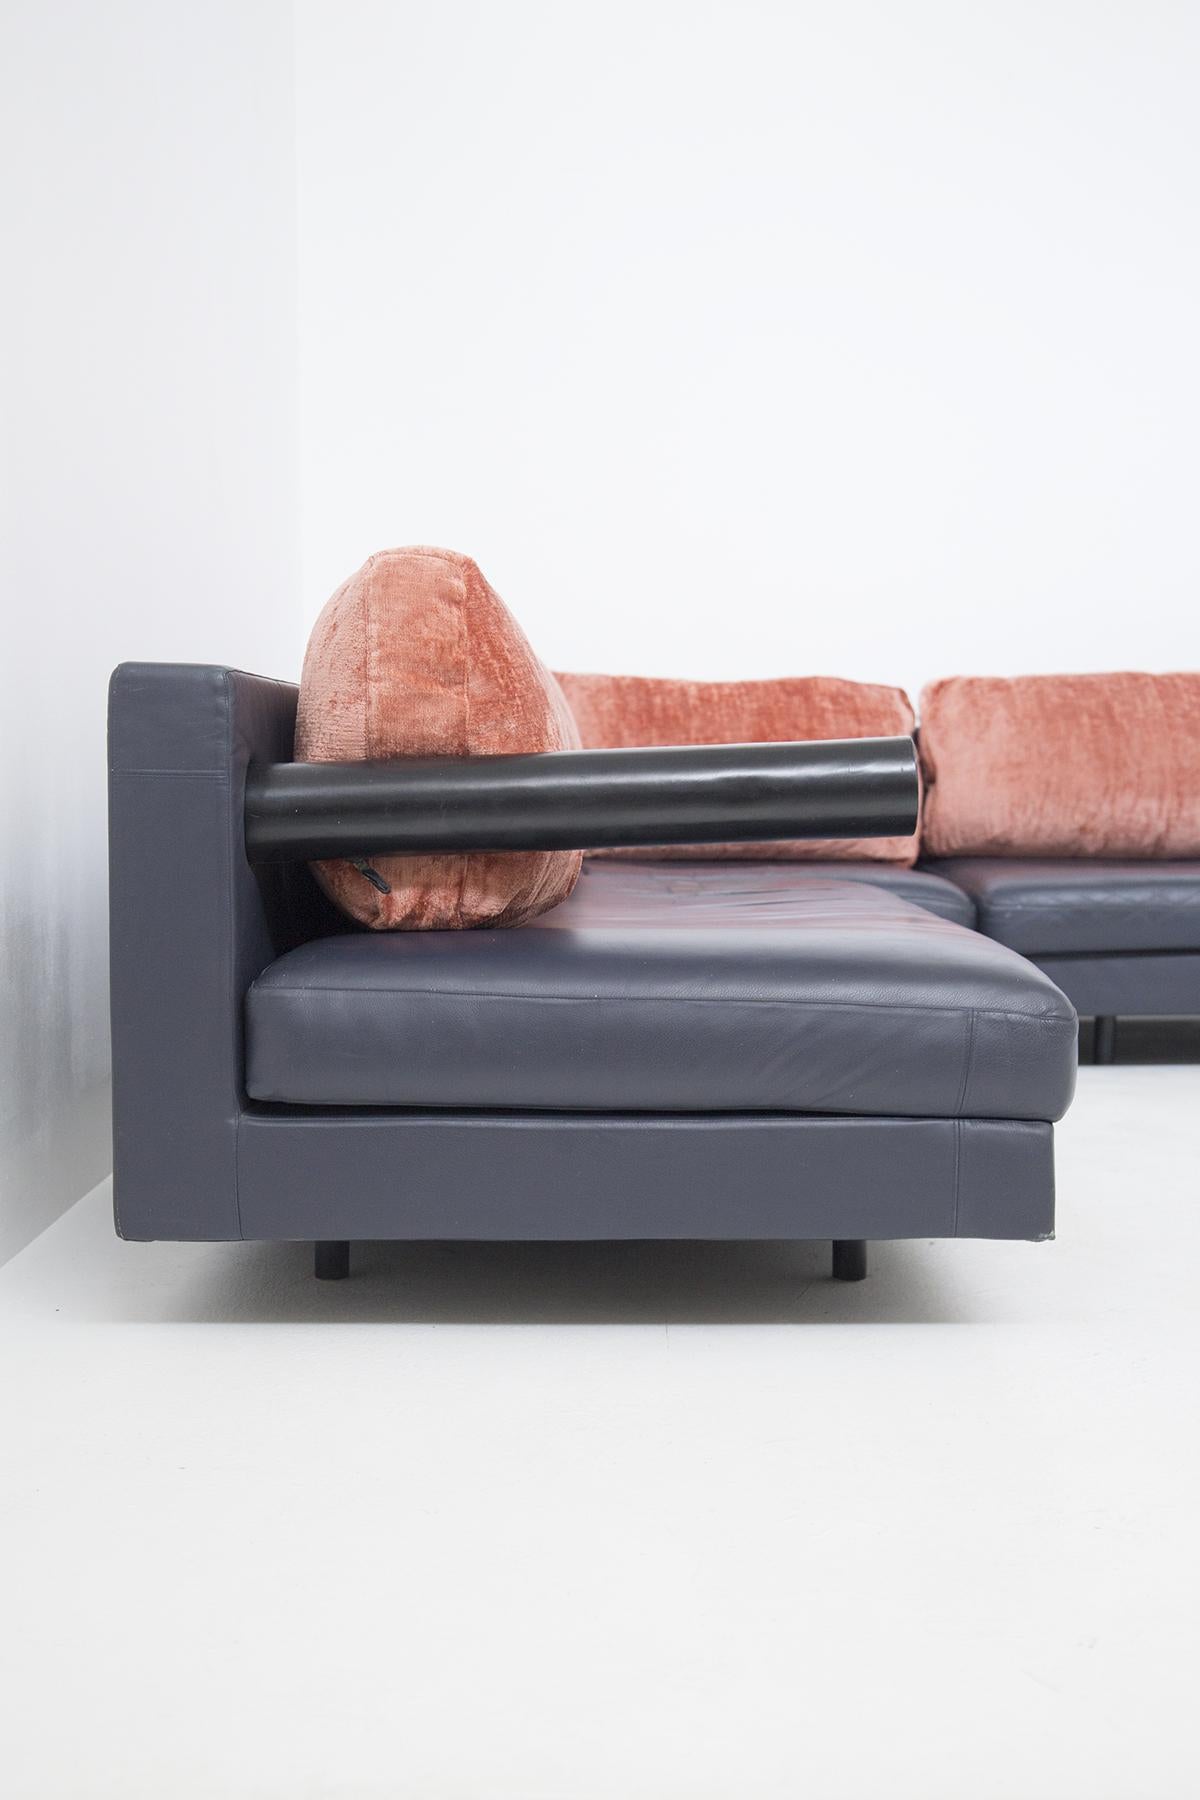 Antonio Citterio Leather Corner Sofa for B&B Italia In Good Condition For Sale In Milano, IT